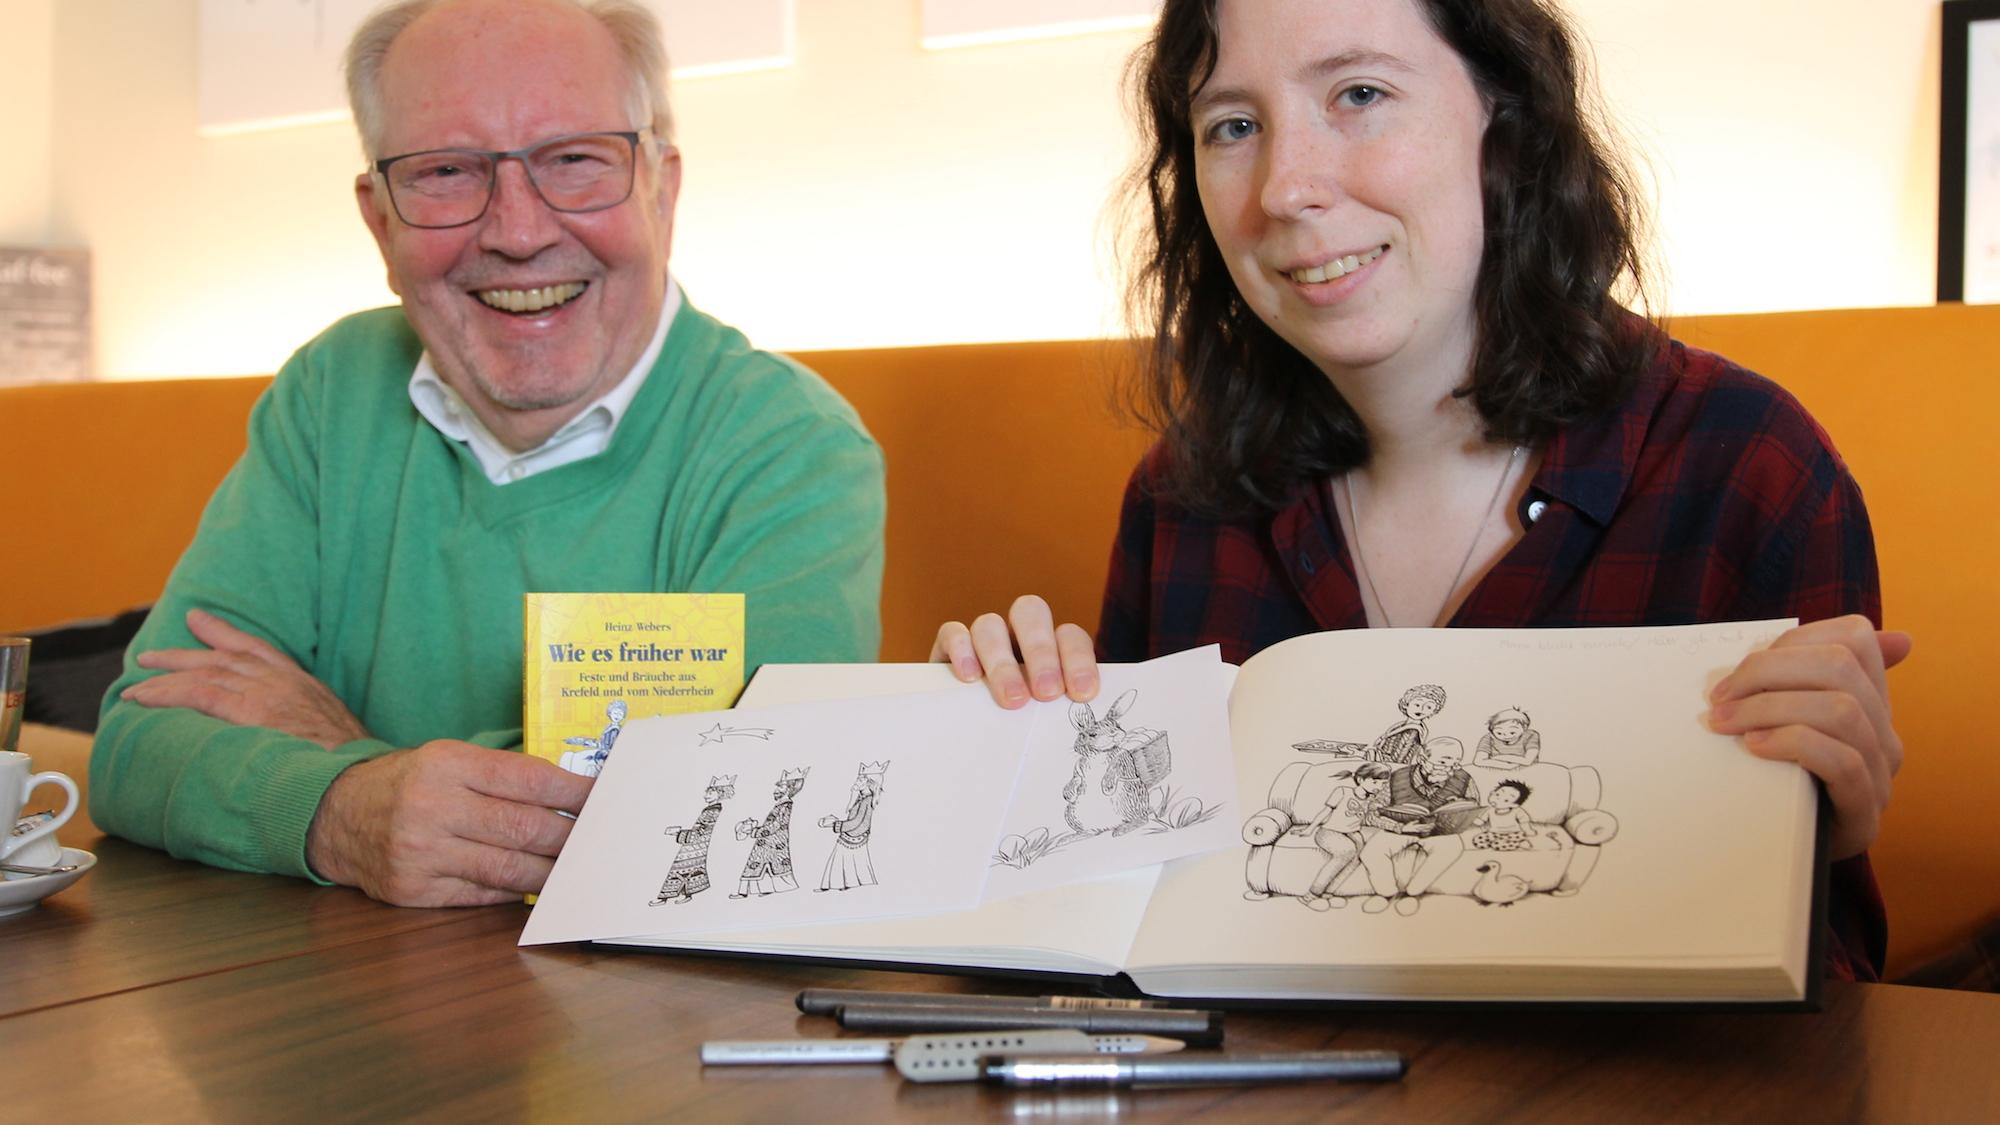 Ein gutes Team: Zu Heinz Webers’ Geschichten zu Bräuchen und Festen entwarf Susanna Welzel die liebevoll gestalteten Zeichnungen. (c) Kathrin Albrecht